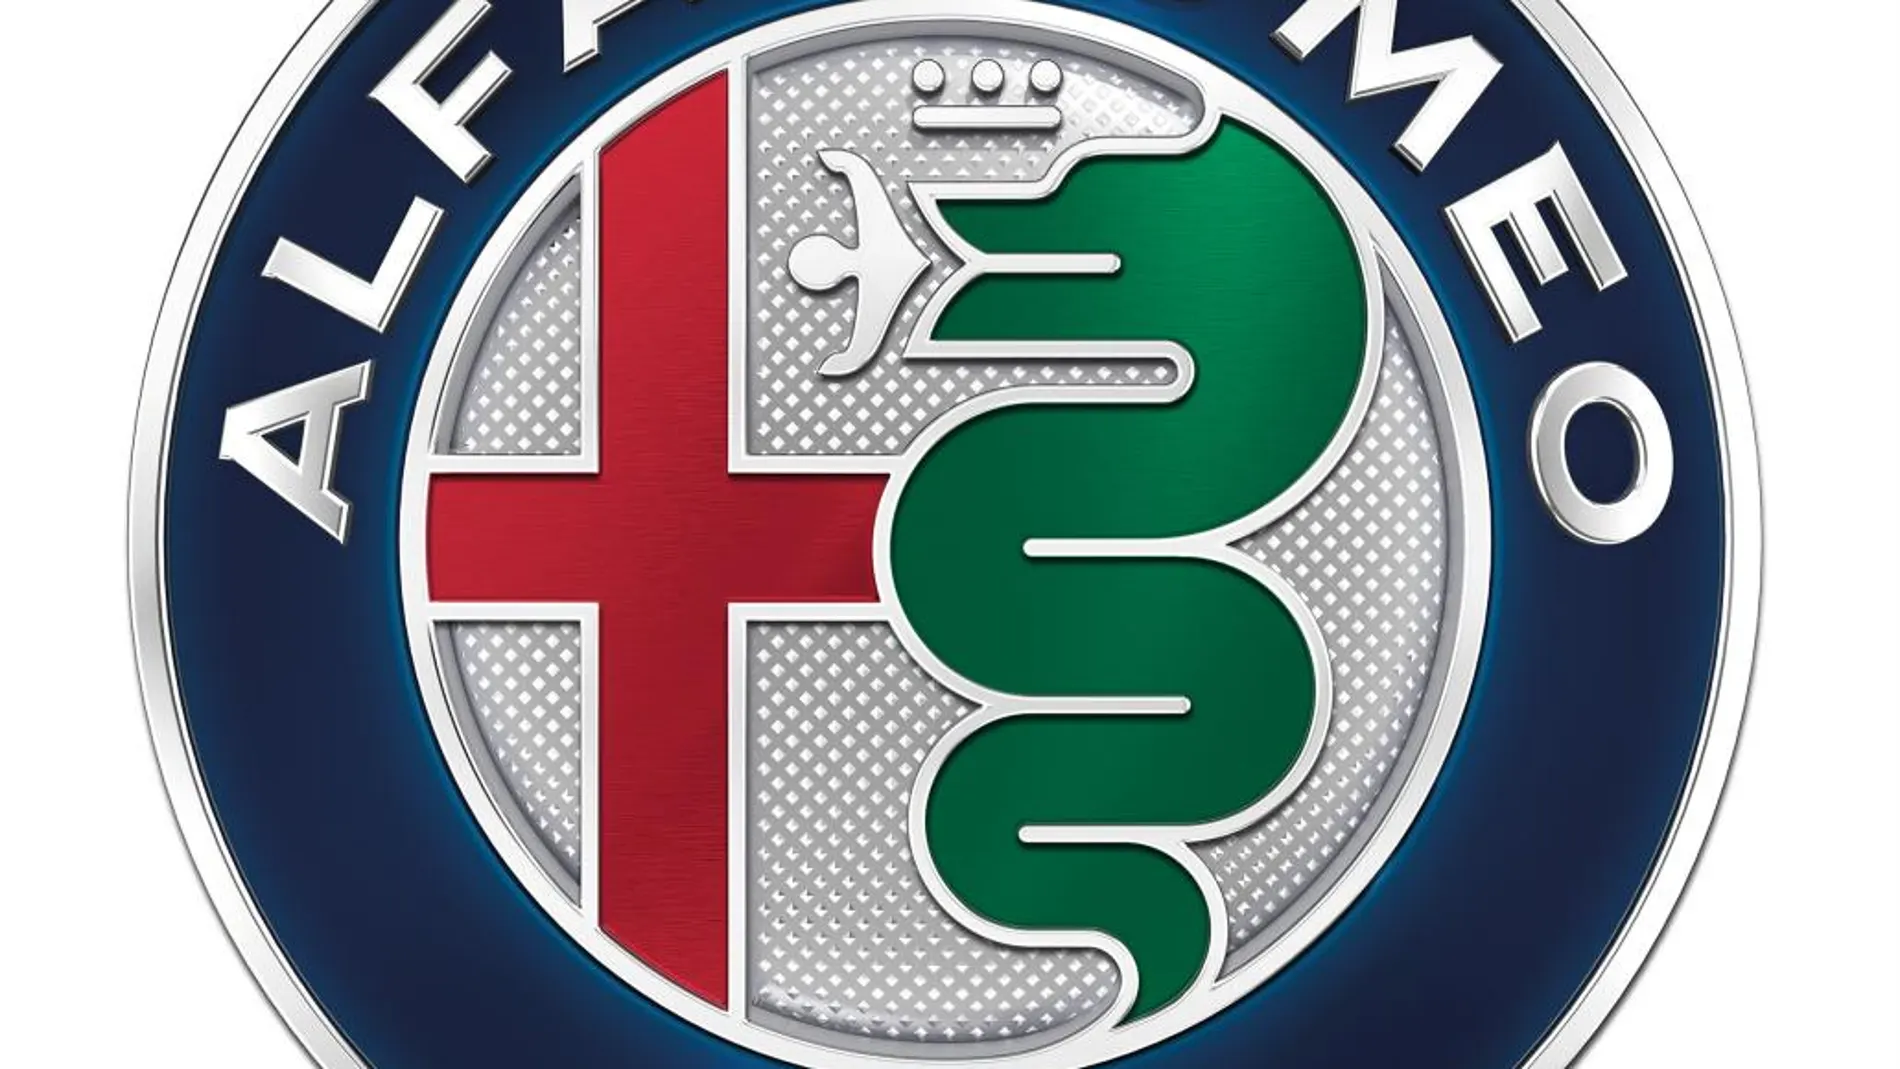 El nuevo logotipo respeta los orígenes de Alfa.